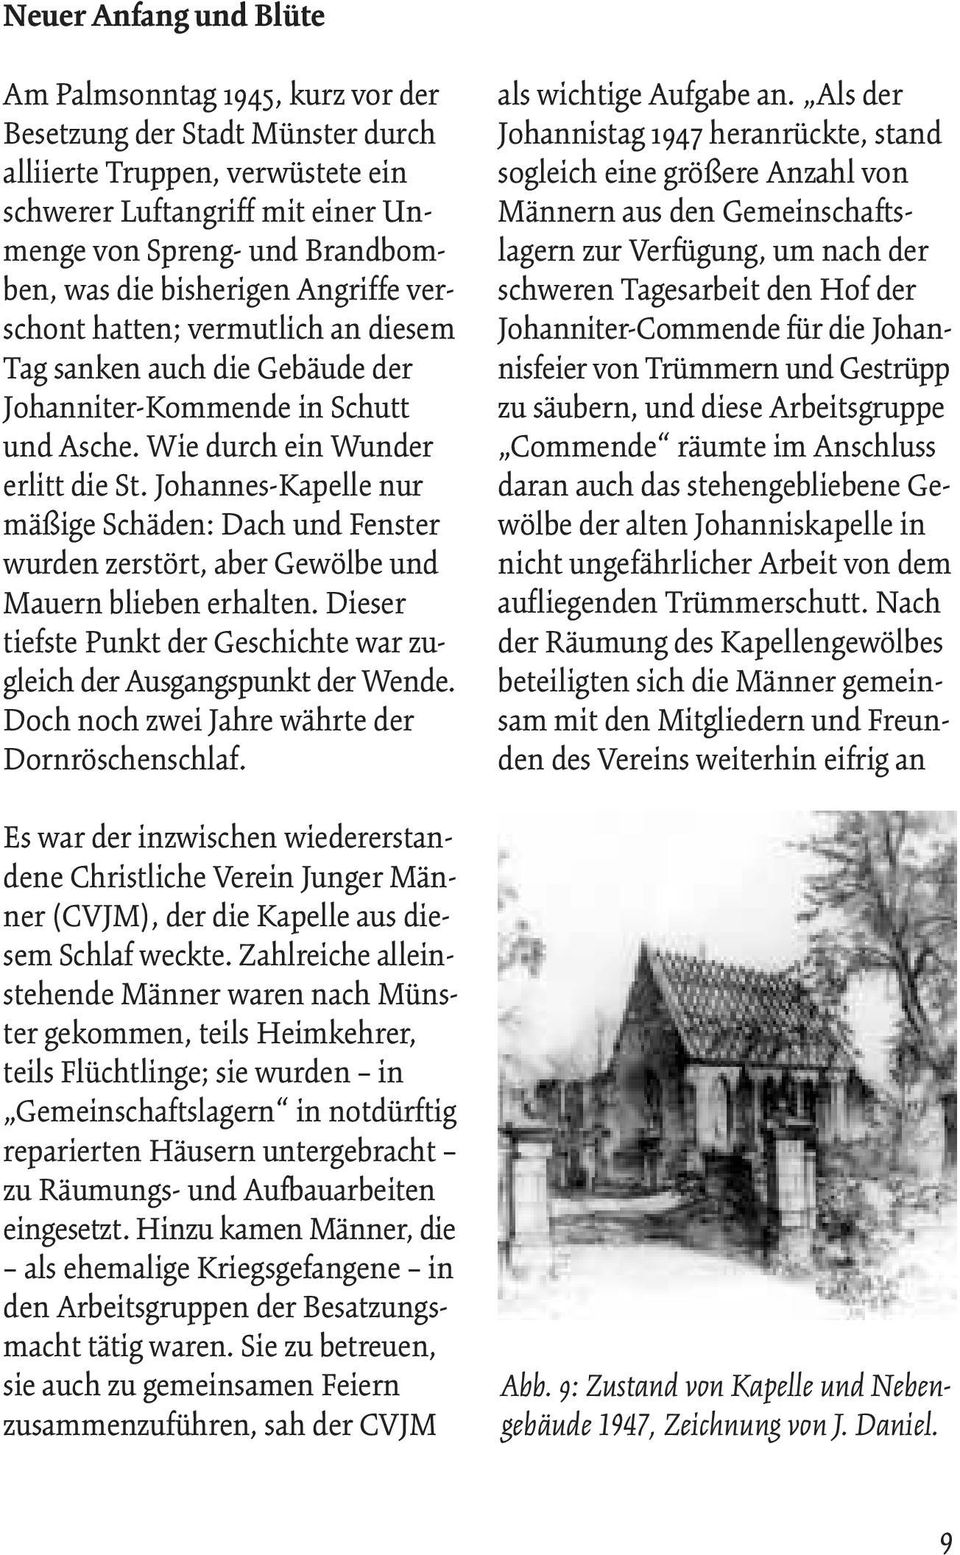 Johannes-Kapelle nur mäßige Schäden: Dach und Fenster wurden zerstört, aber Gewölbe und Mauern blieben erhalten. Dieser tiefste Punkt der Geschichte war zugleich der Ausgangspunkt der Wende.